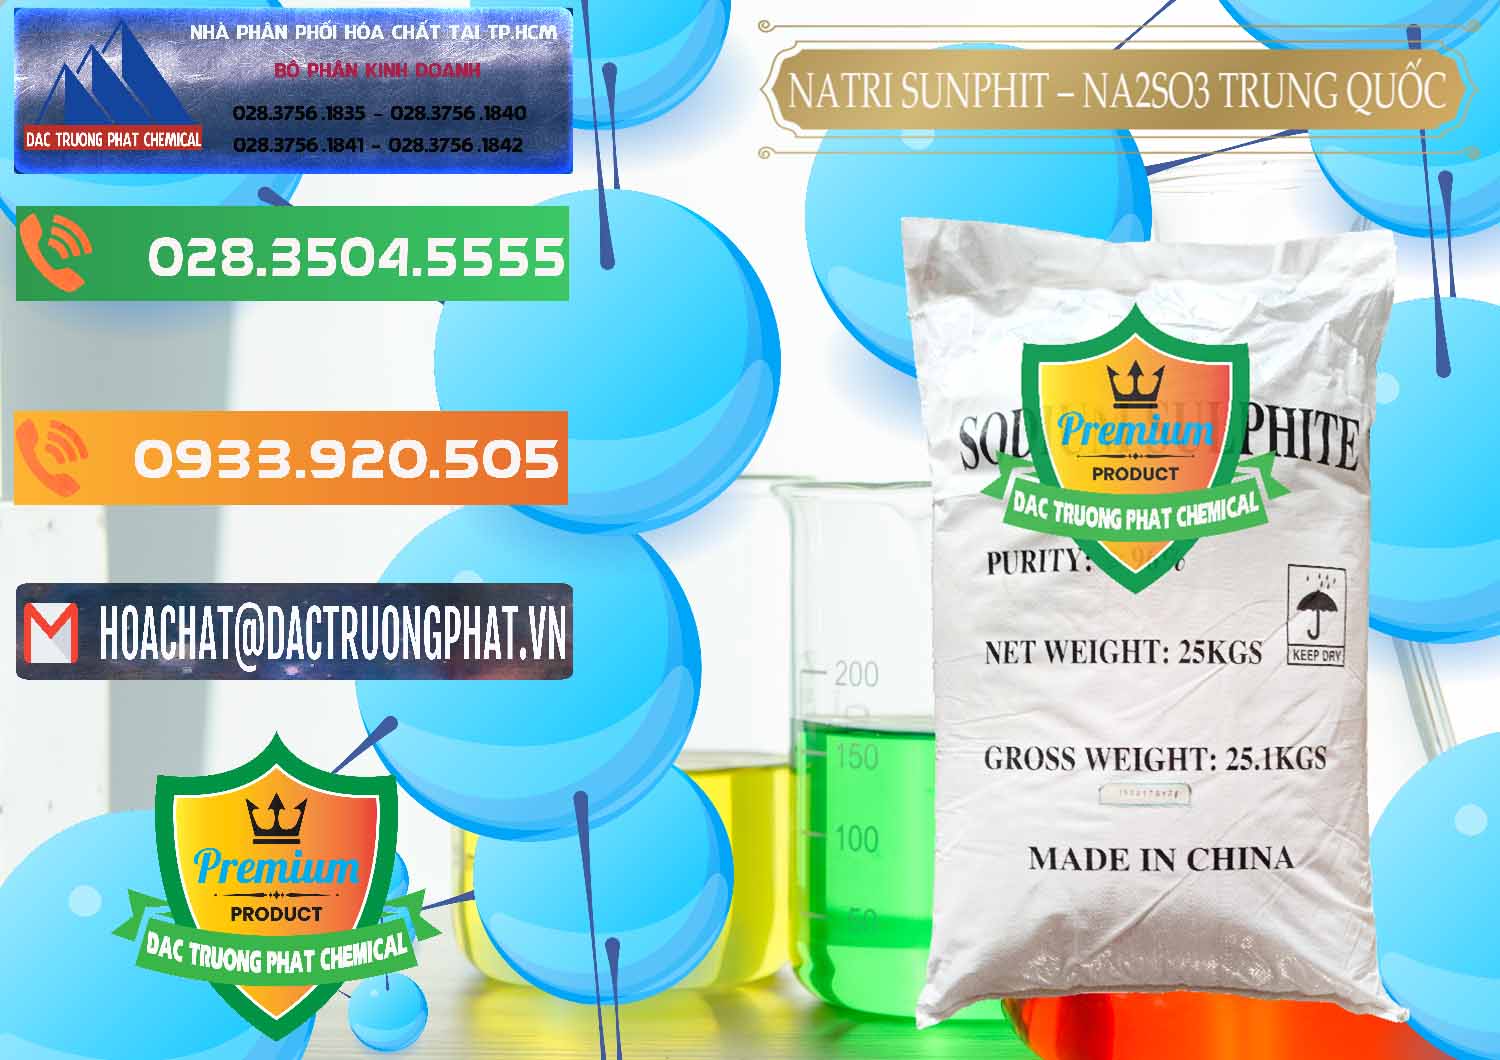 Cty chuyên bán _ phân phối Natri Sunphit - NA2SO3 Trung Quốc China - 0106 - Nhà nhập khẩu - phân phối hóa chất tại TP.HCM - hoachatxulynuoc.com.vn